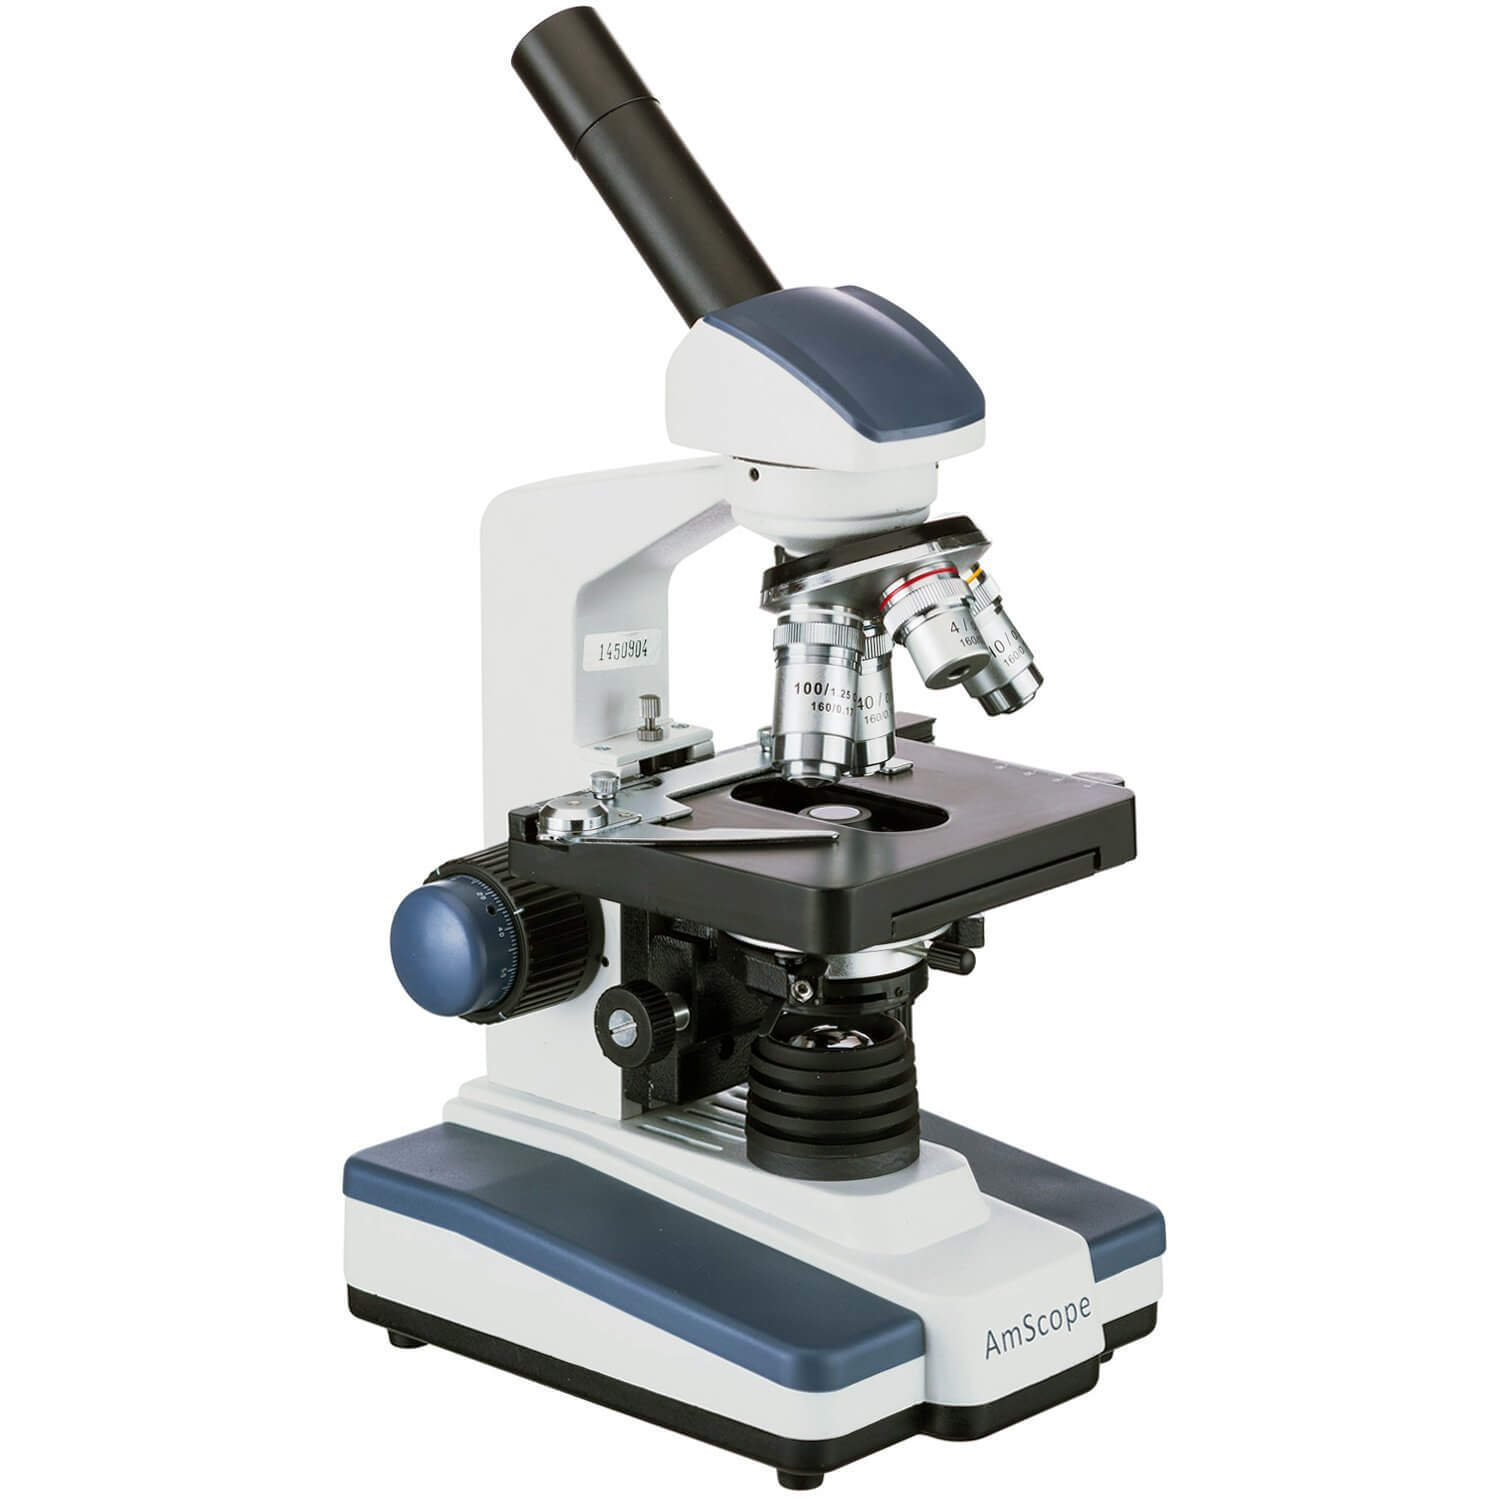 AmScope M620C-E1 Digital Compound Monocular Microscope